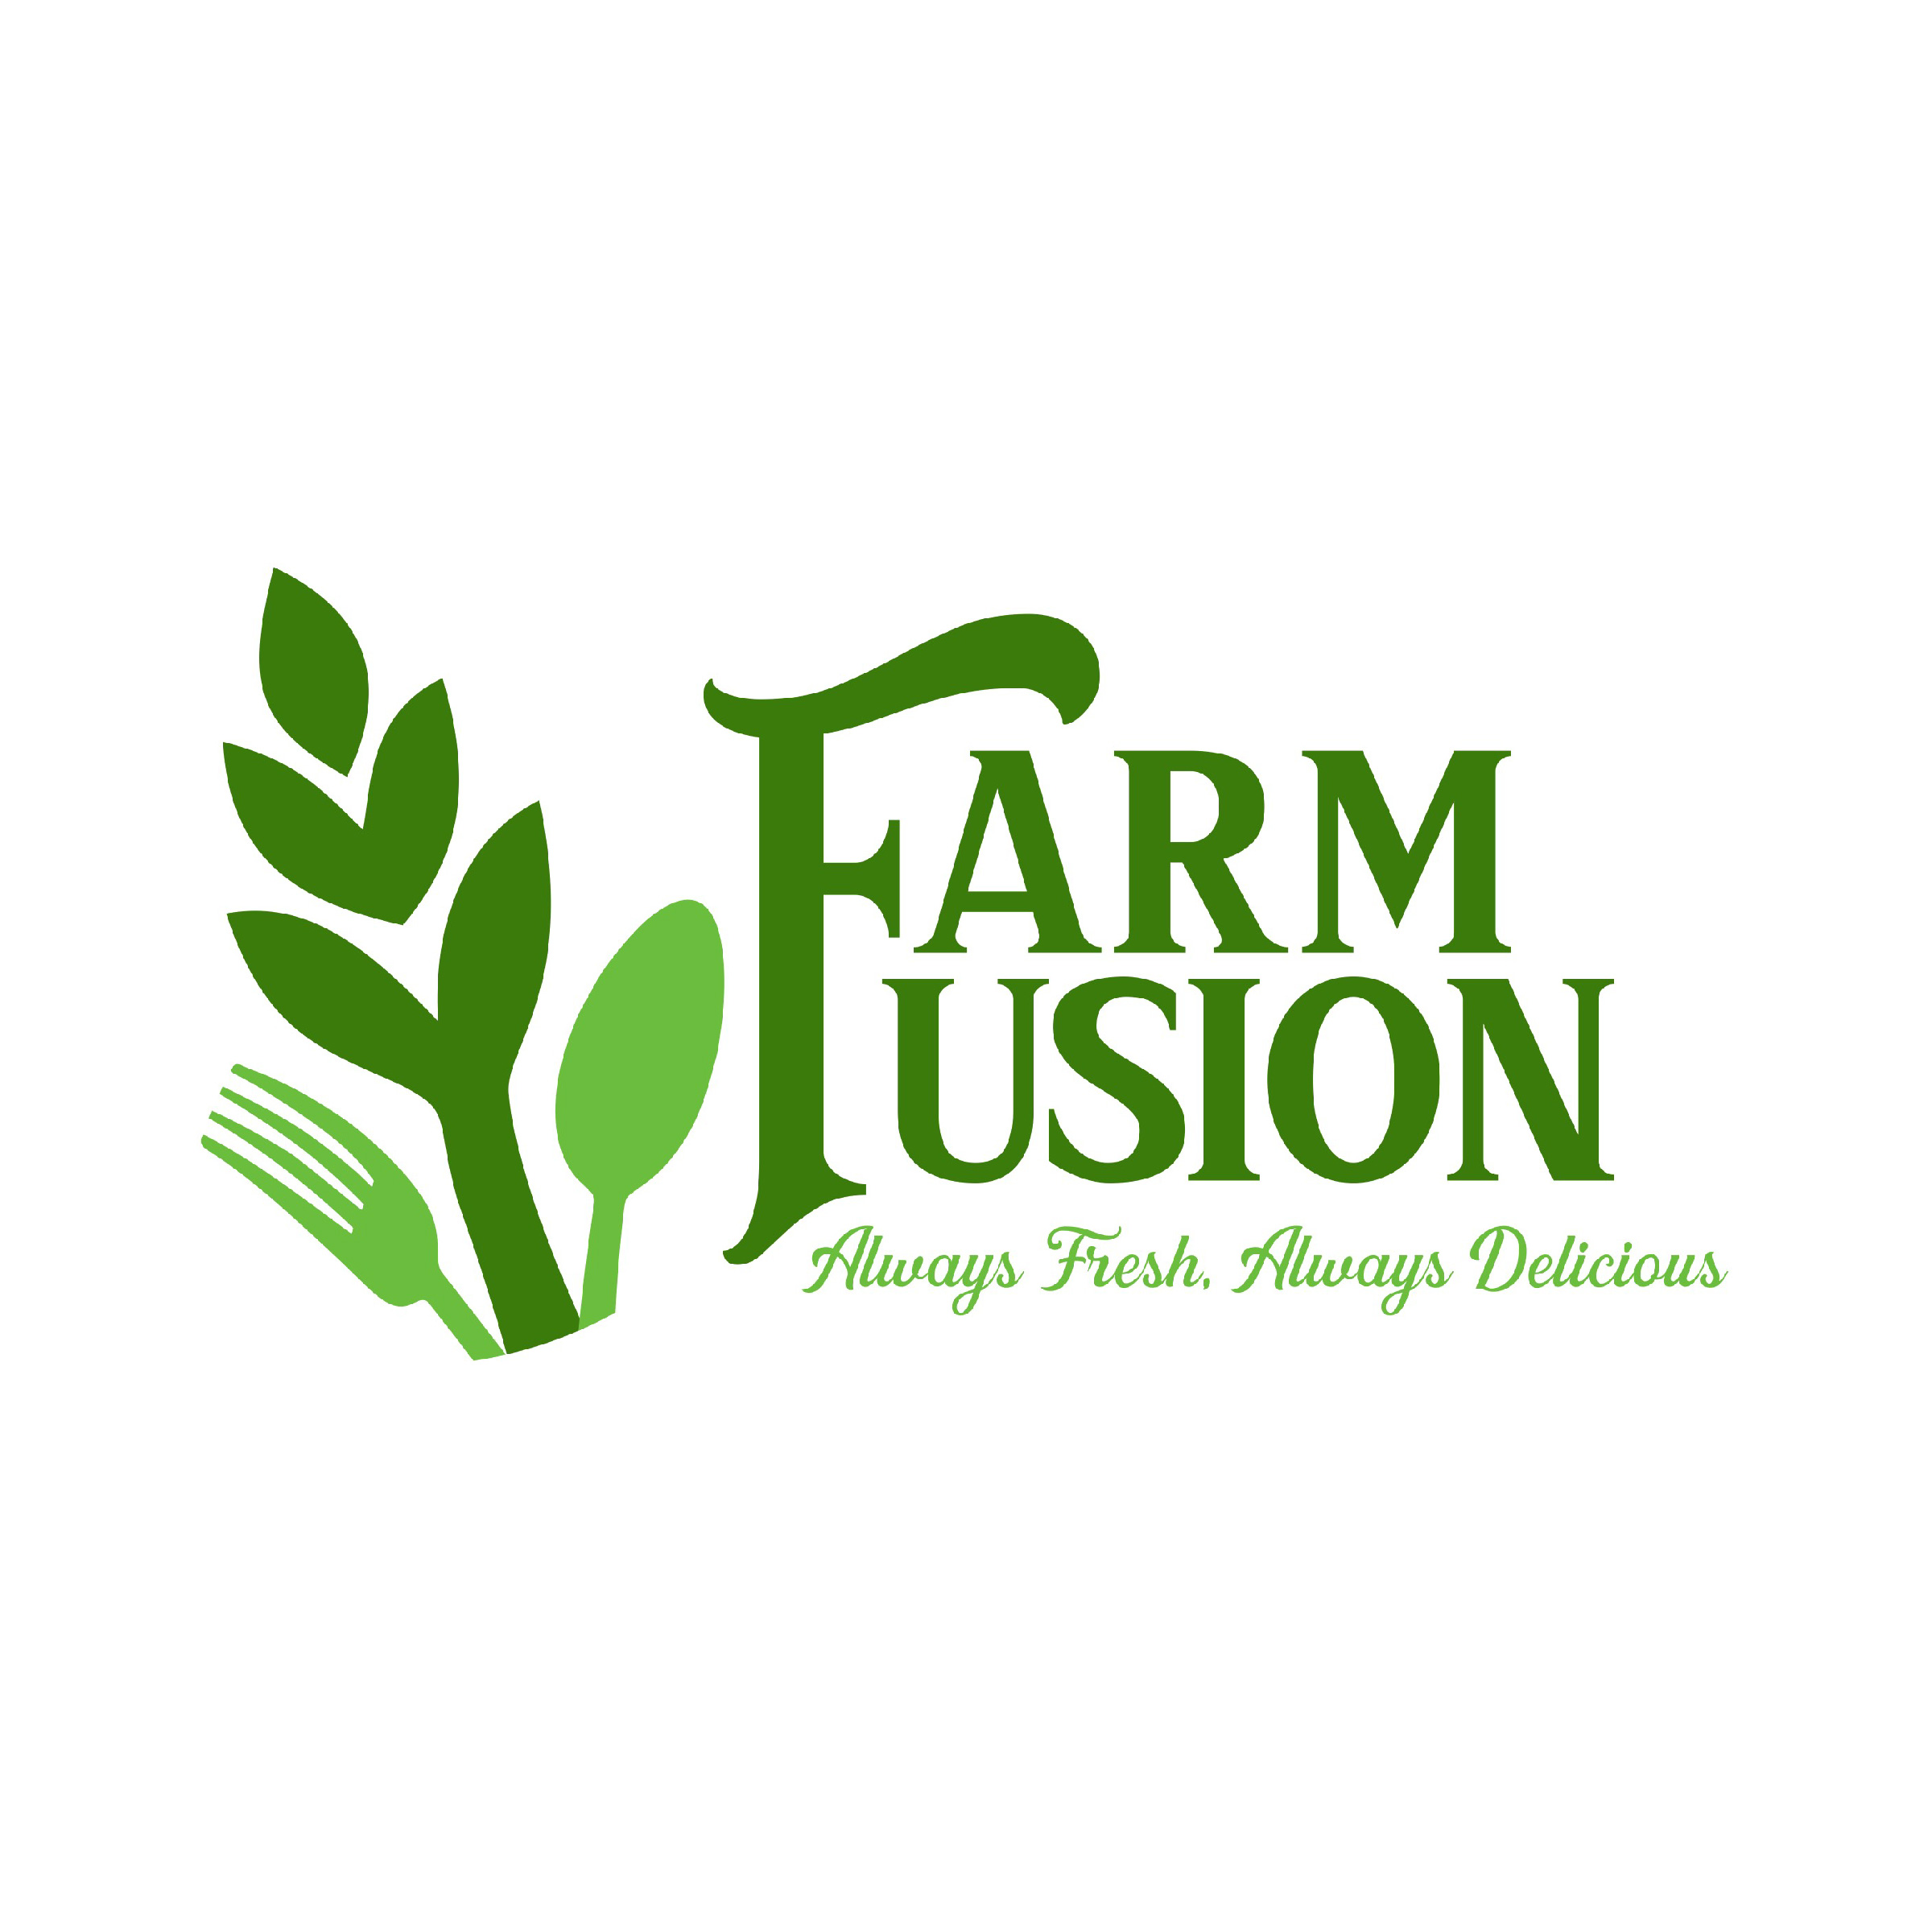 Farm Fusion